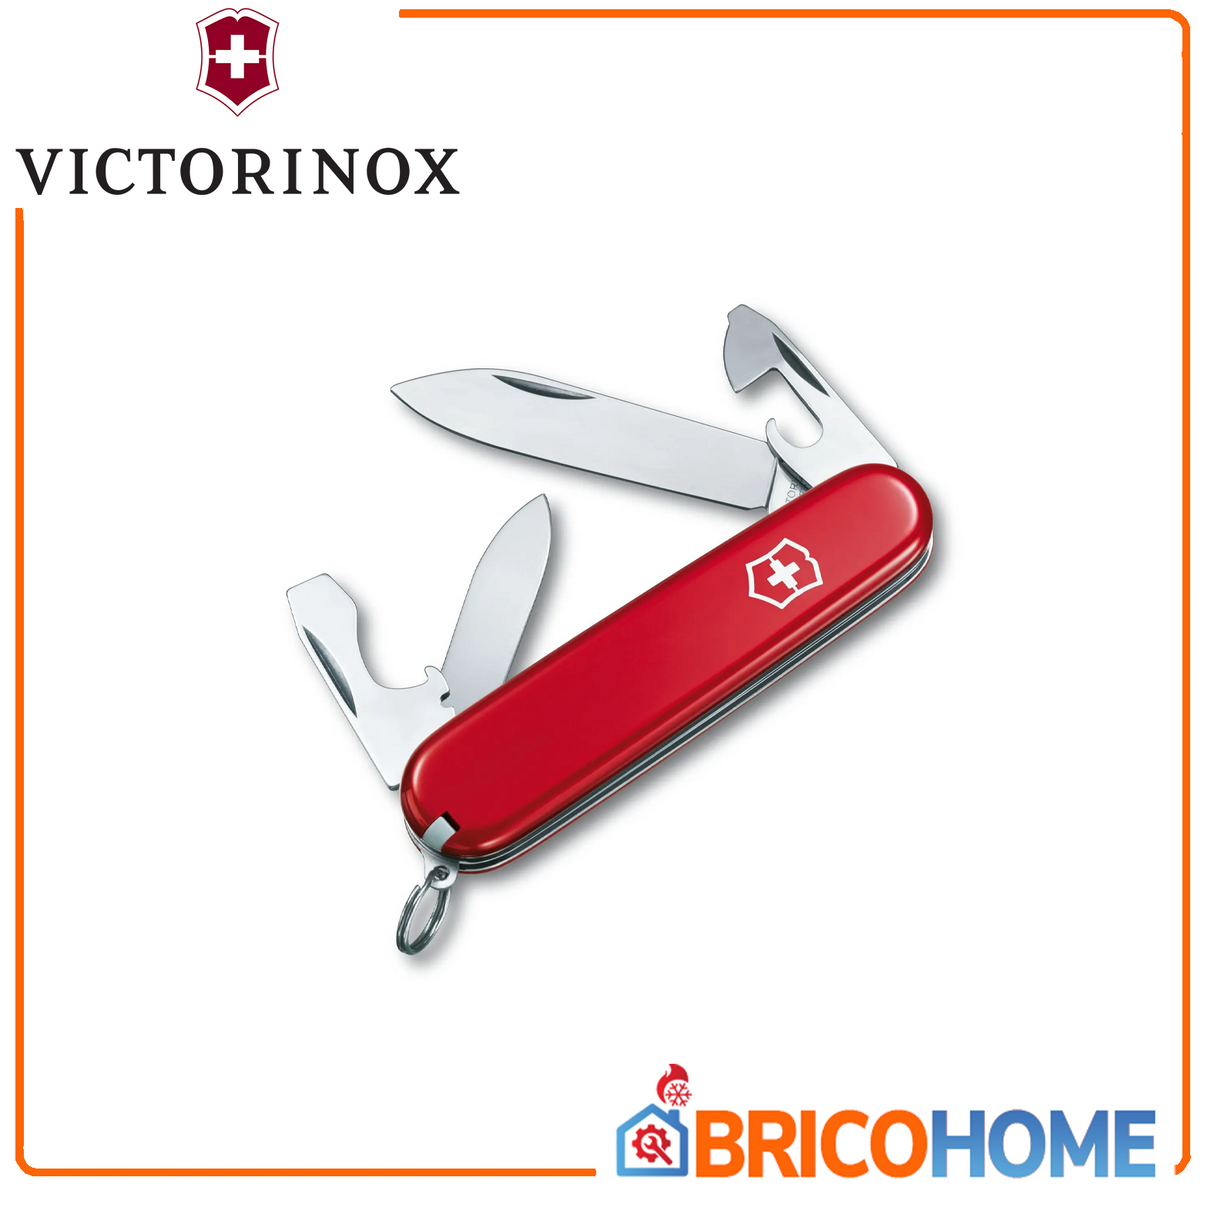 Victorinox Recruit Mehrzwecktaschen-Schweizer Taschenmesser 8,4 cm